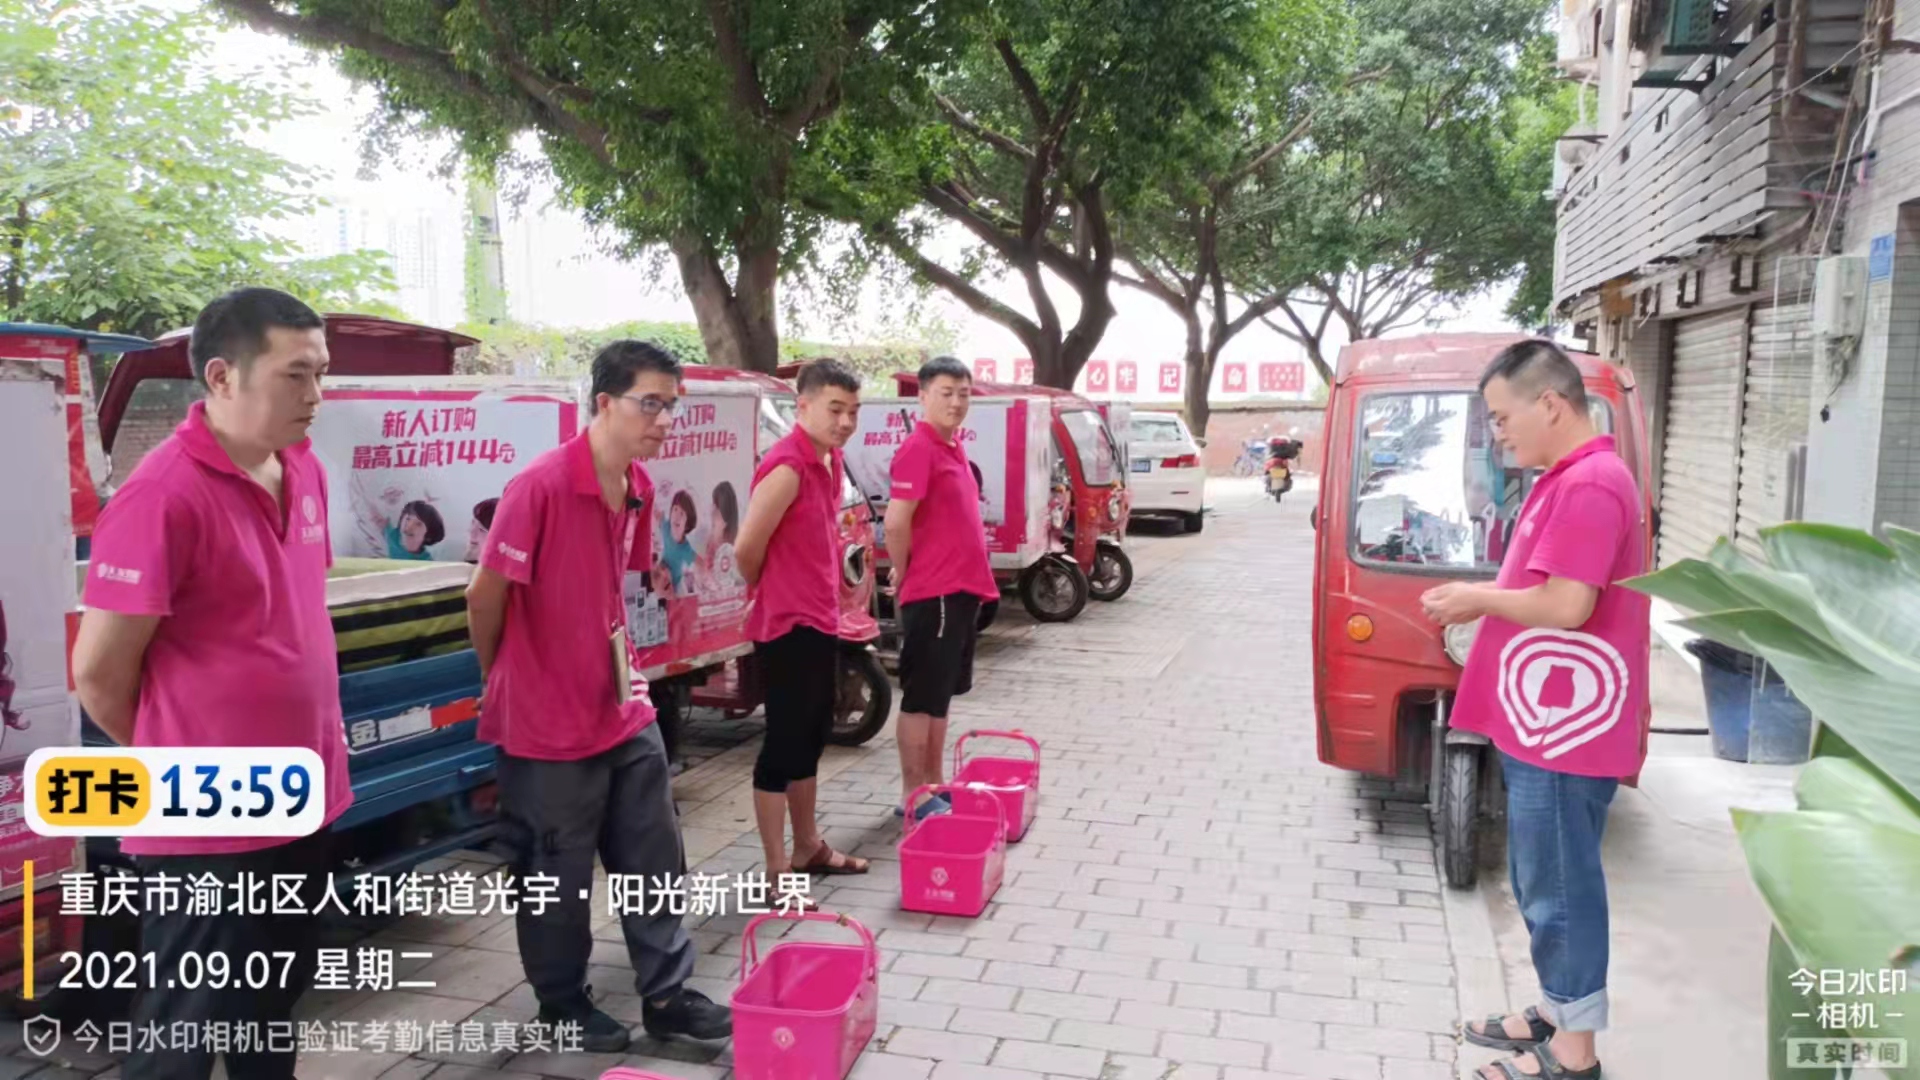 重庆市锦易羲商贸有限公司 环境照片活动图片